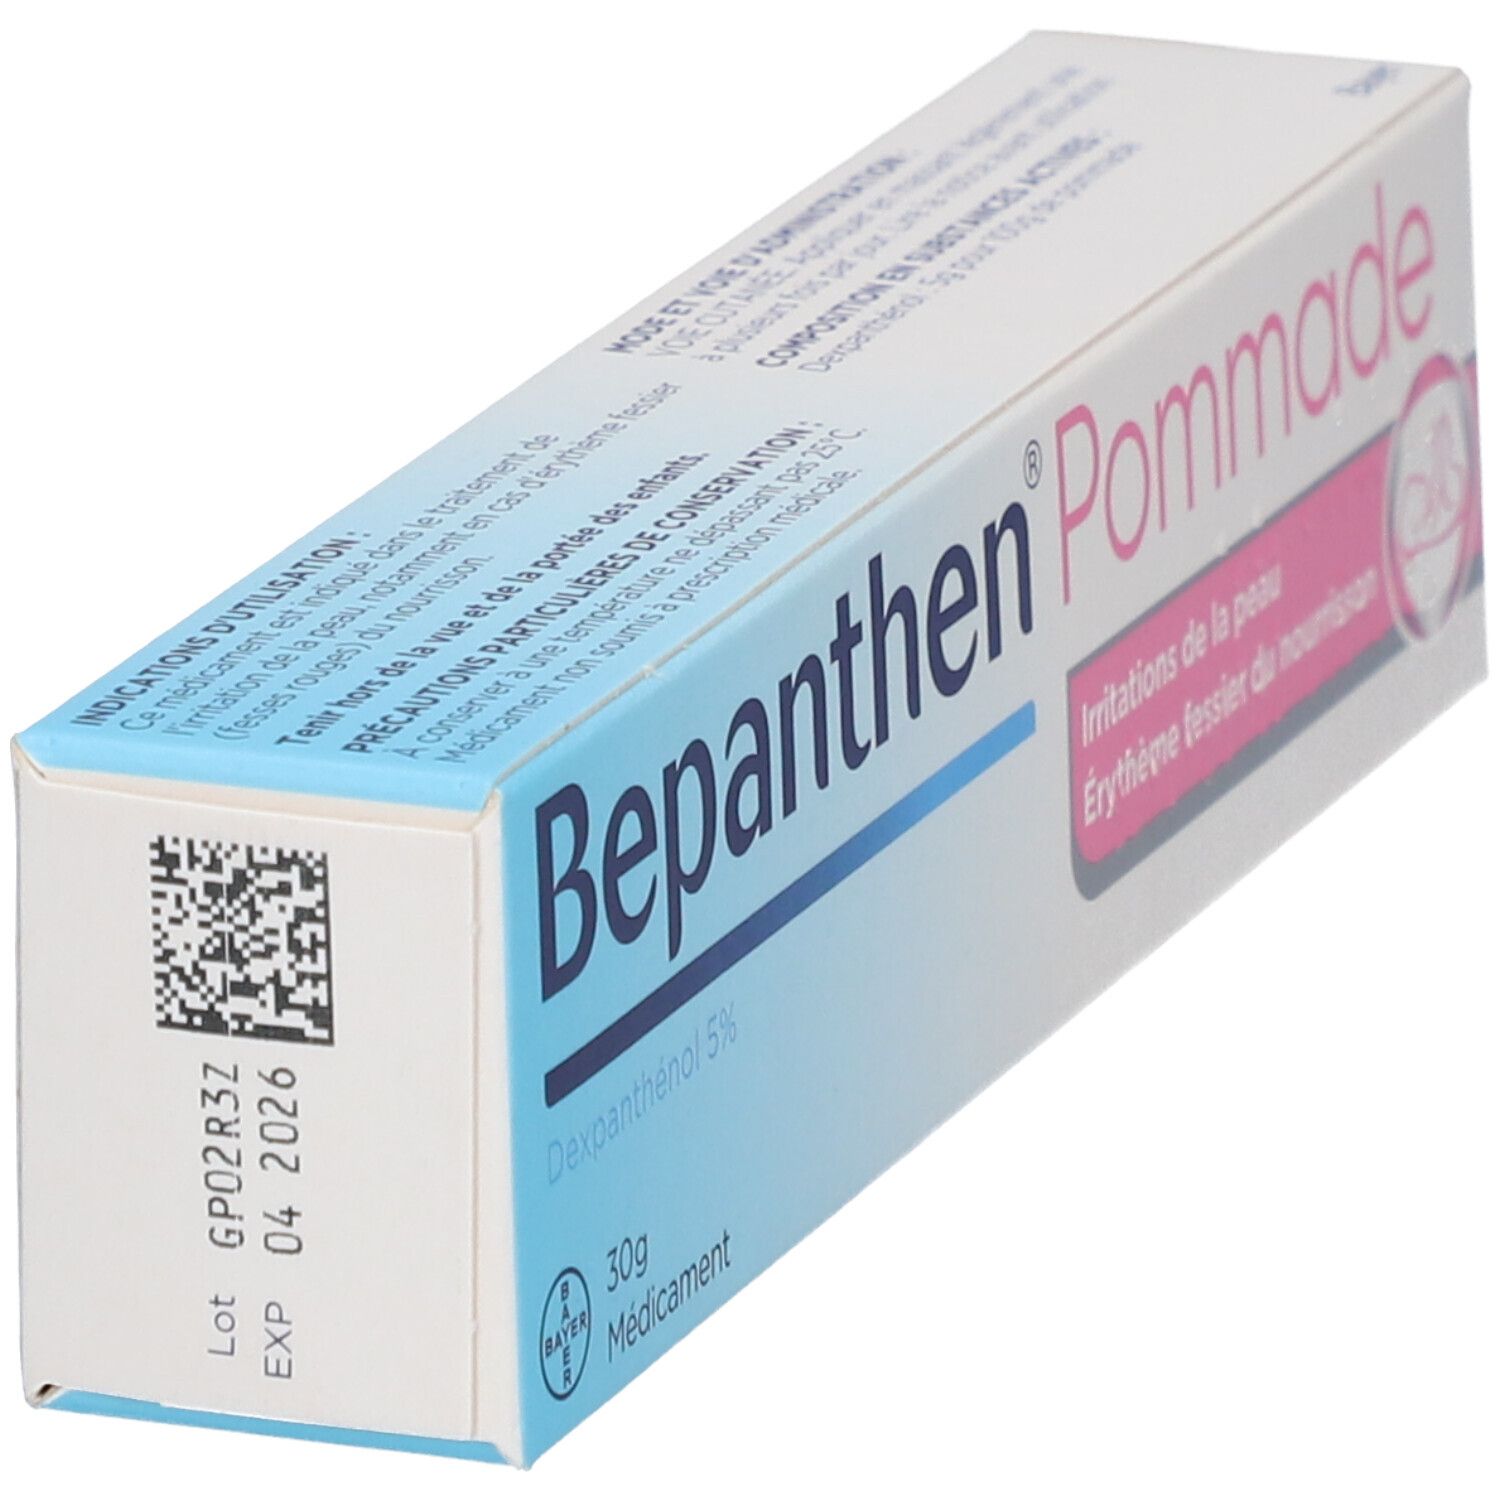 Bepanthen® Pommade 5 % 30 g